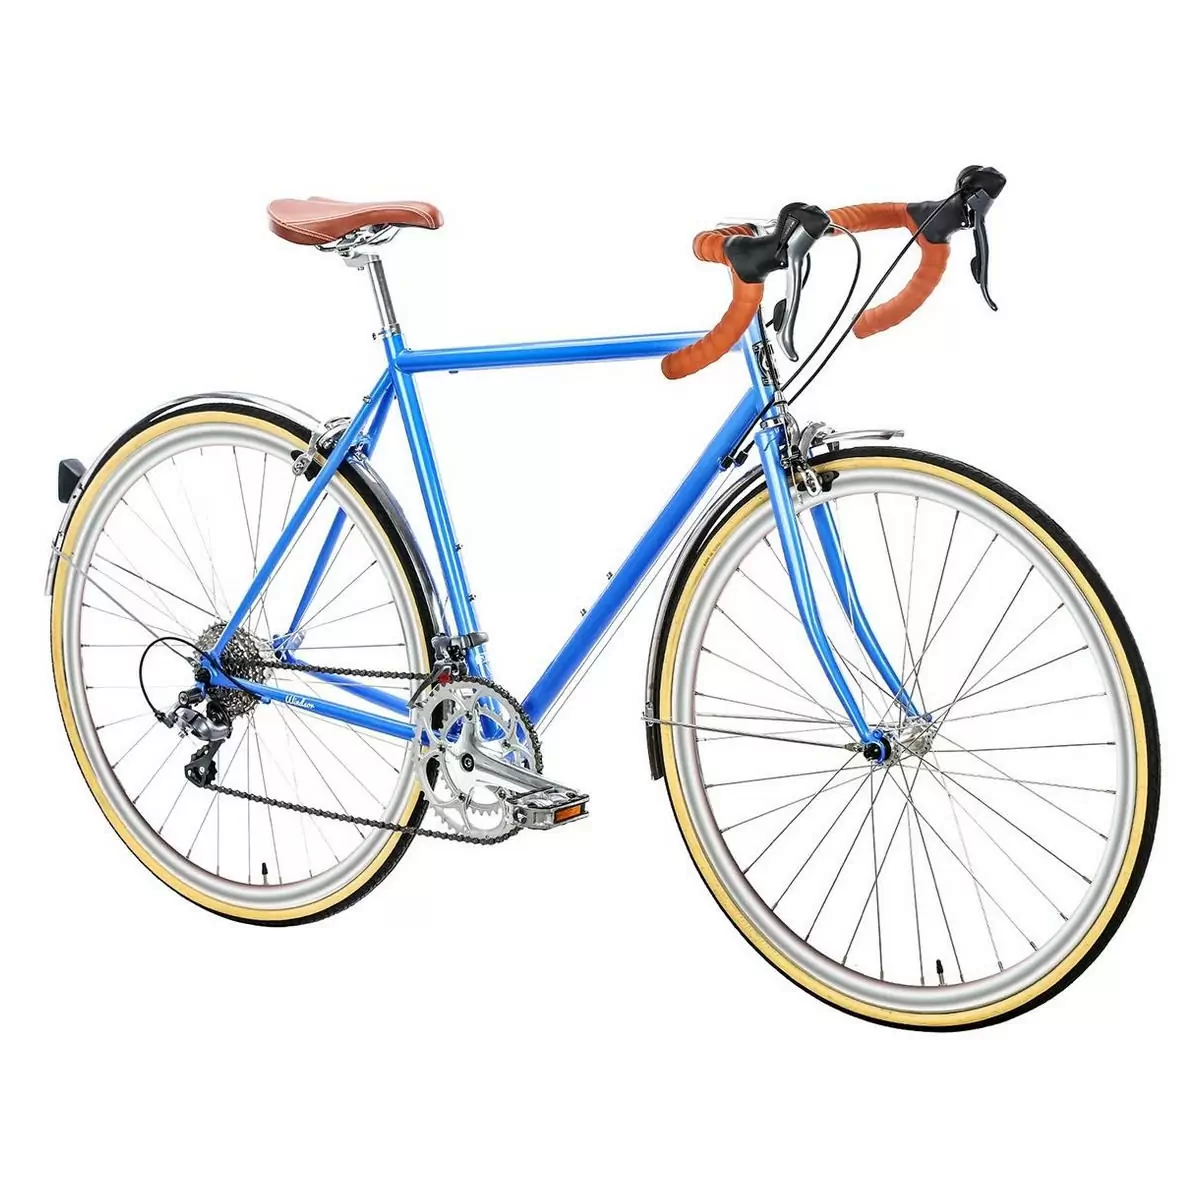 Bicicleta urbana TROY 16spd azul windsor pequena 58cm #1